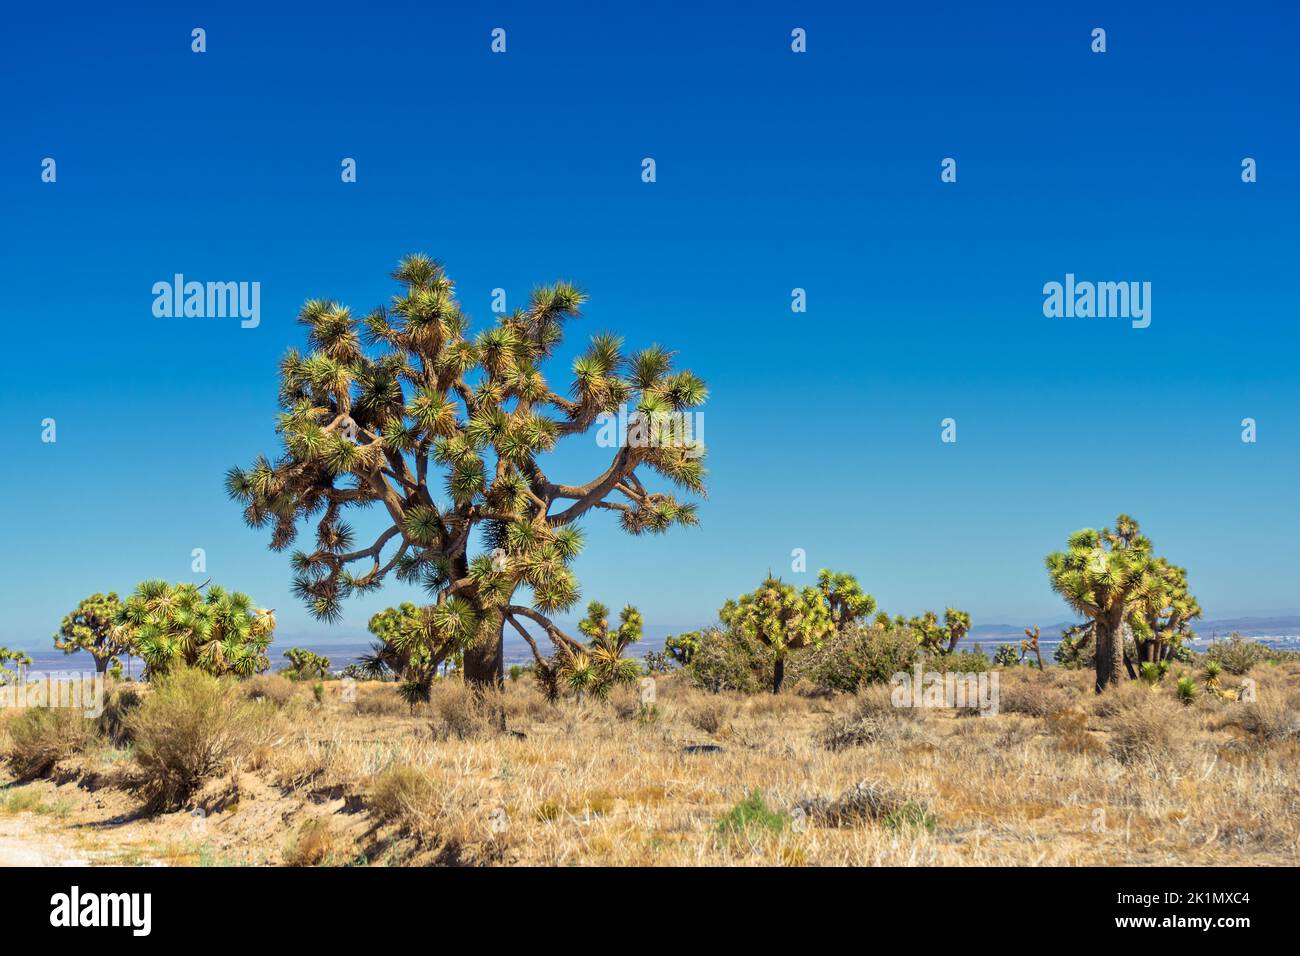 Joshua Trees in the Mojave Desert in California Stock Photo